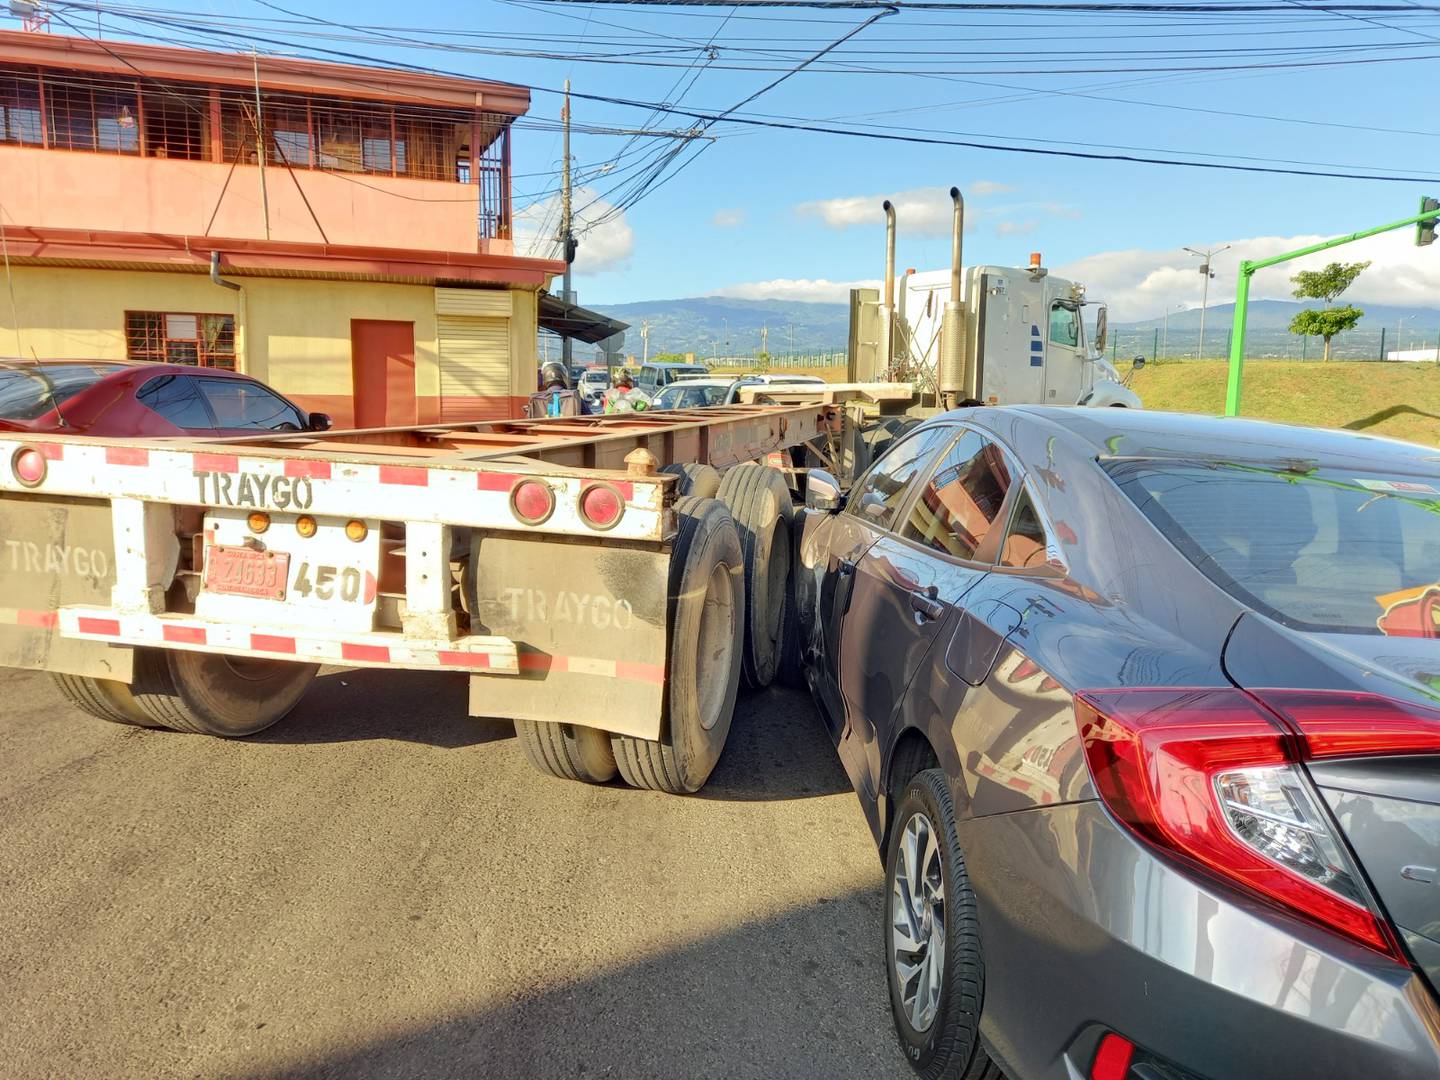 El pasado mes de noviembre nos demostró a todos los costarricenses que sí se pueden bajar los números de muertes en carretera ya que fue el mes con menos fallecidos, 33 en total, según confirma la Policía de Tránsito